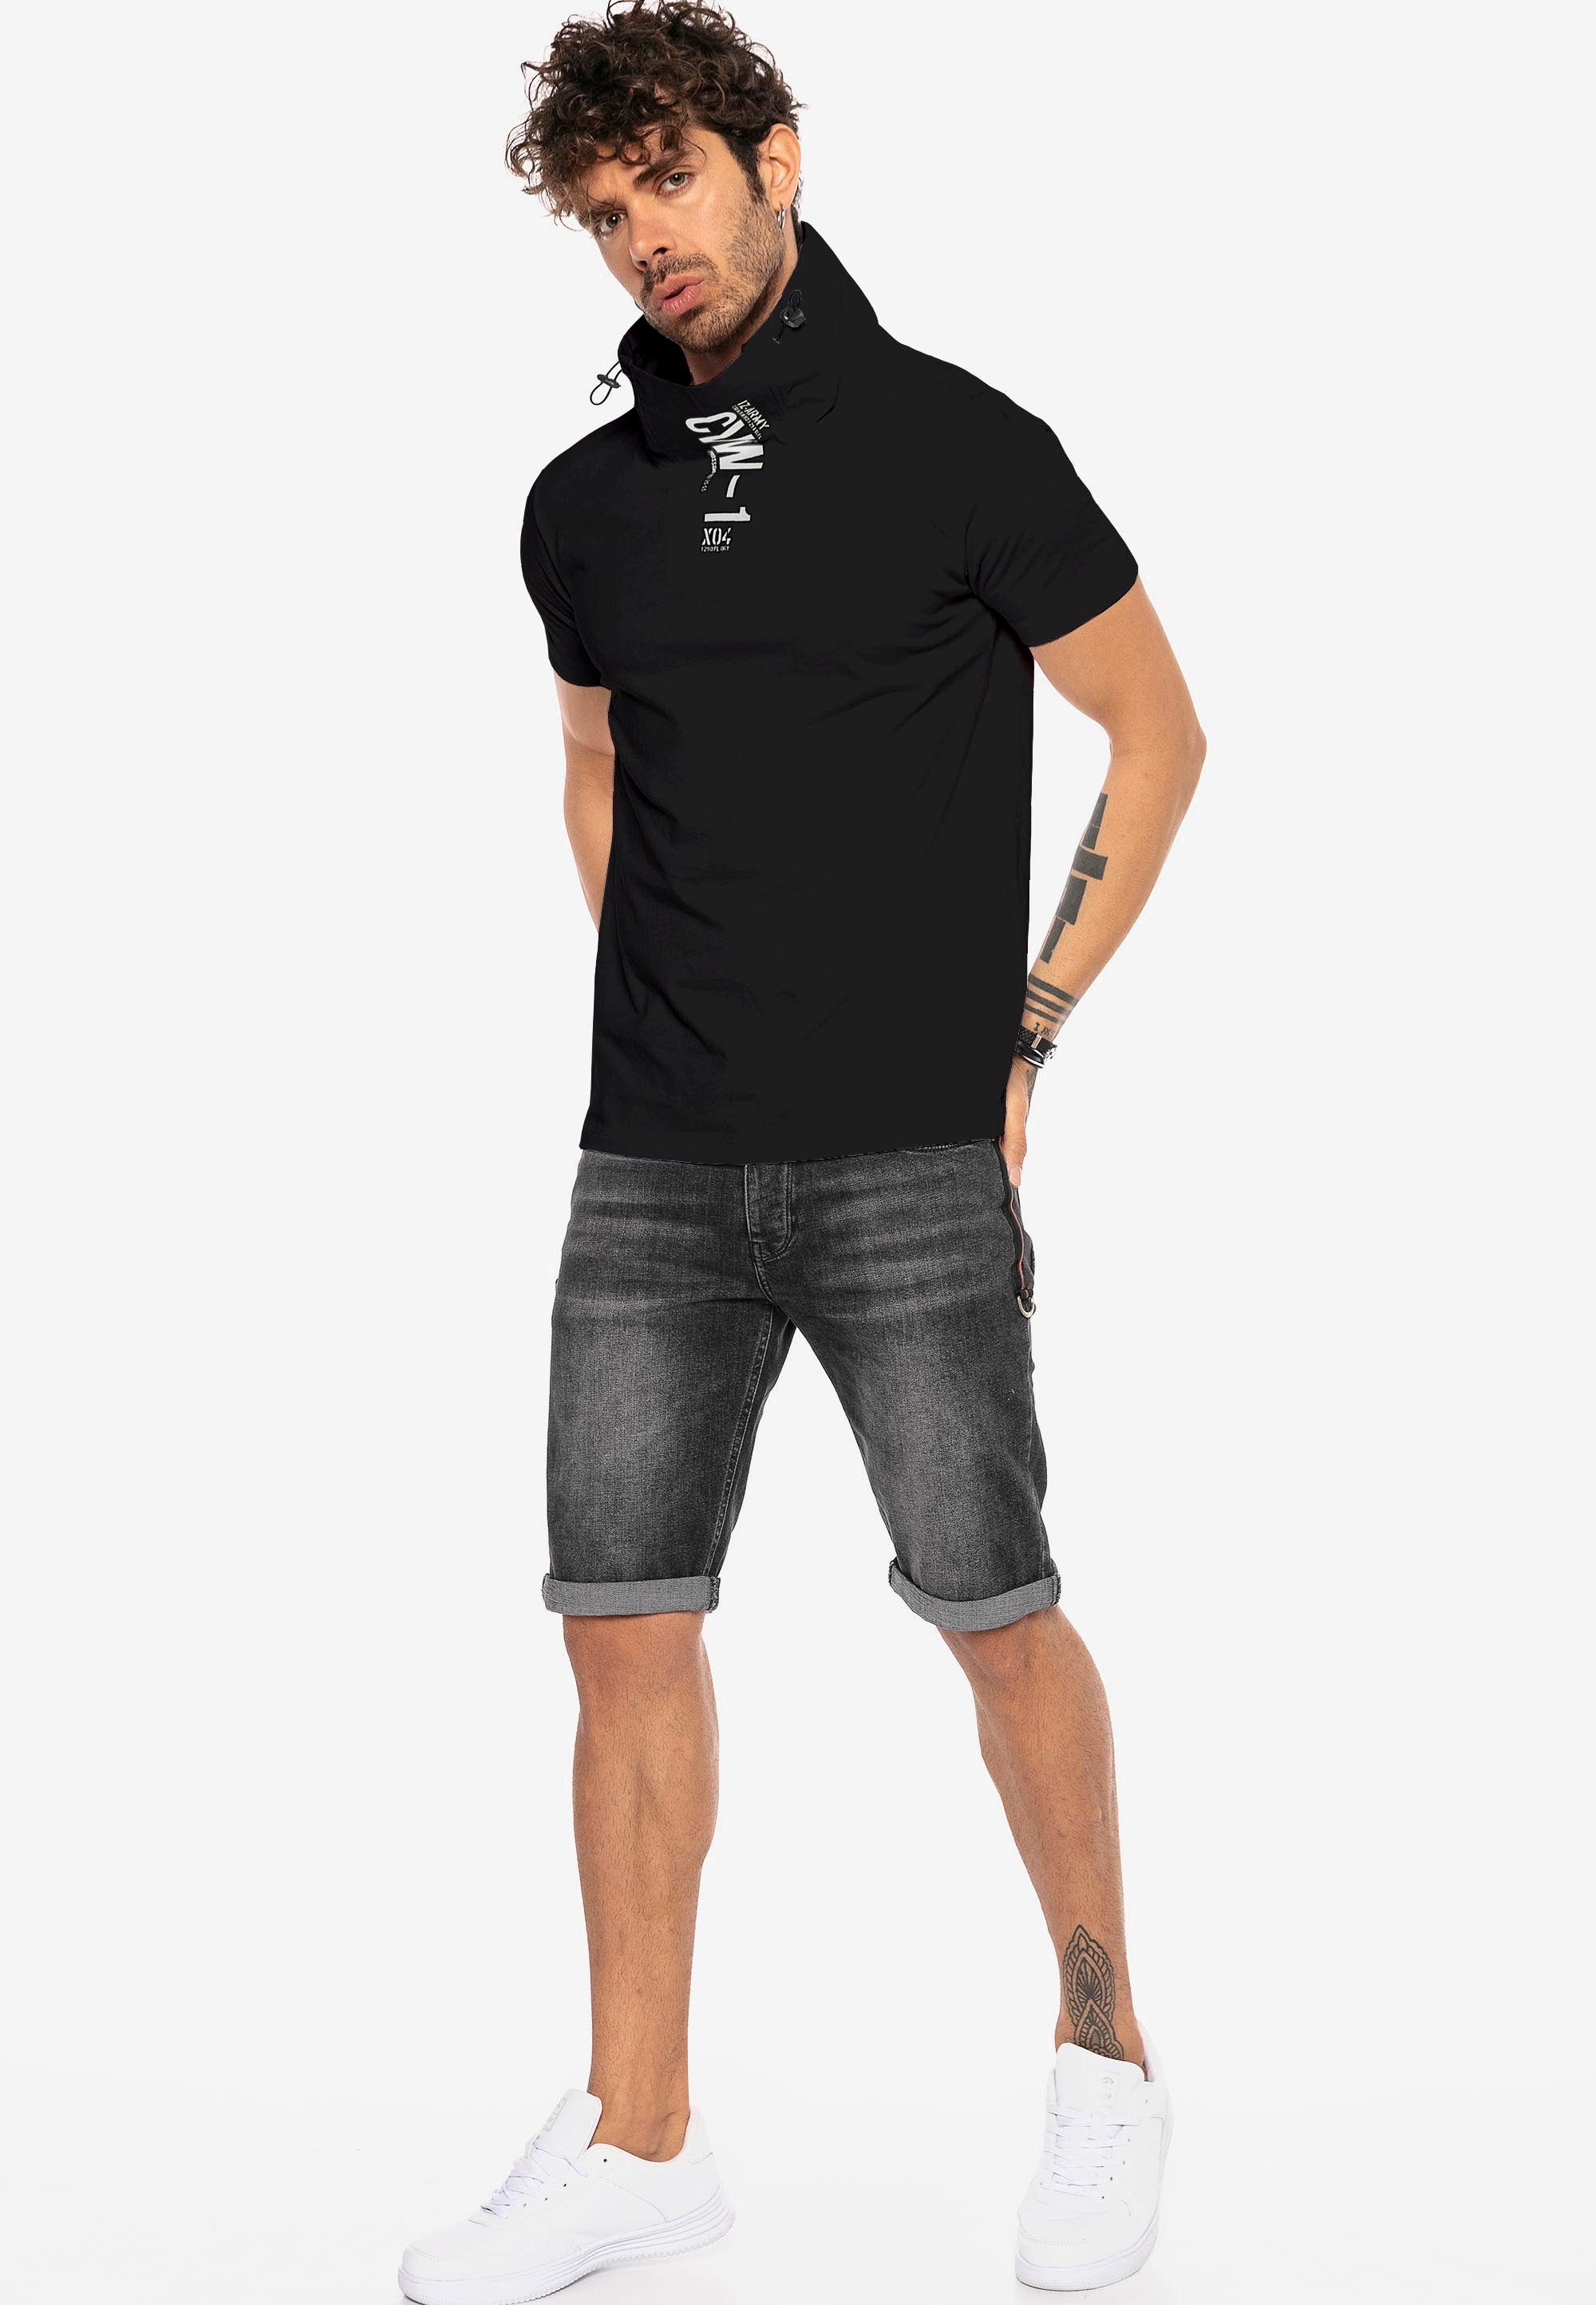 Sunnyvale schwarz Kragen mit hohem RedBridge T-Shirt